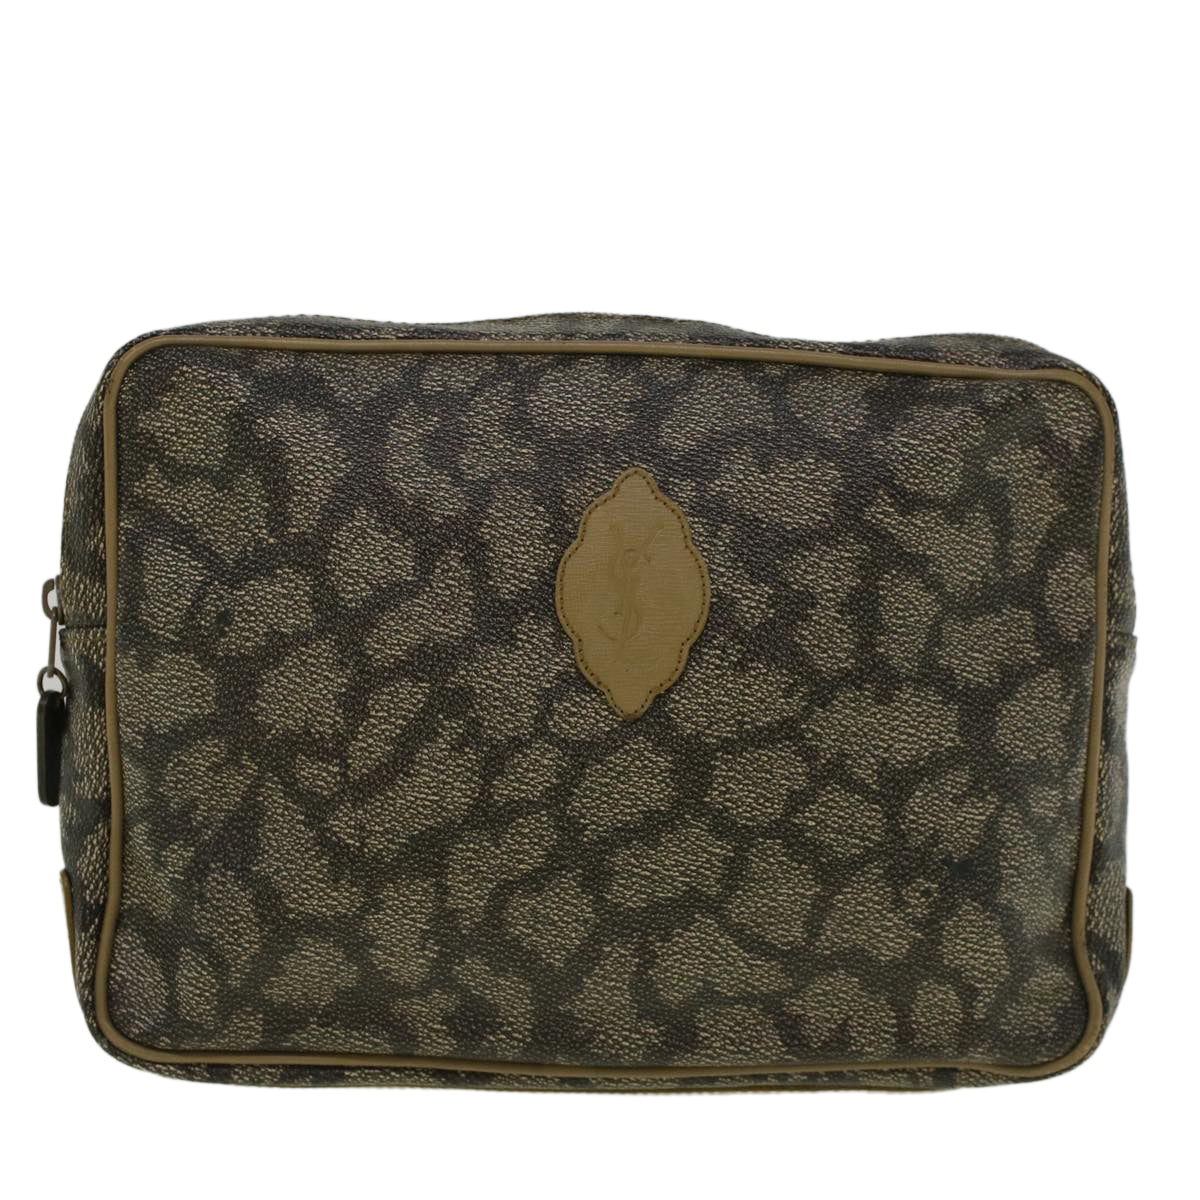 SAINT LAURENT Clutch Bag PVC Leather Gray Auth bs9362